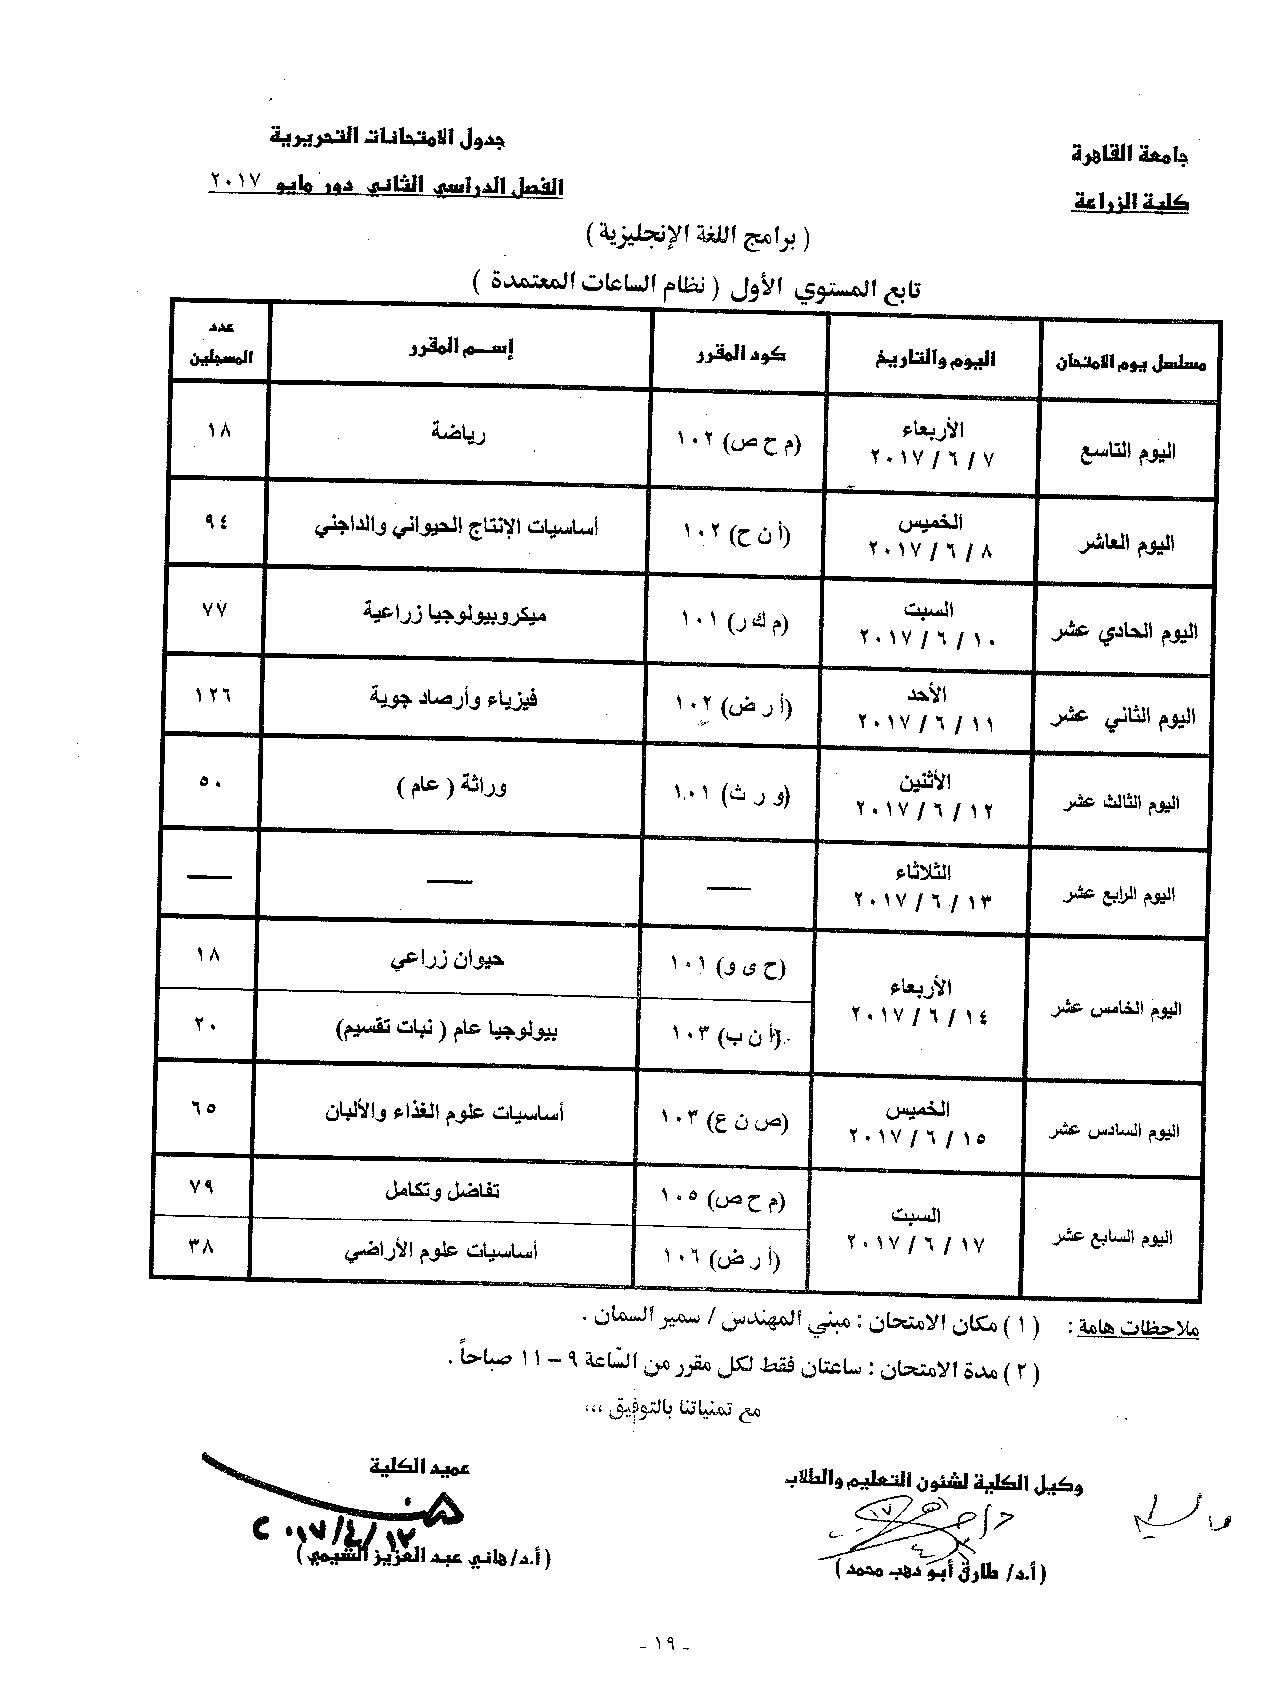                            جدول الامتحانات   الفصل الدراسي  الثاني   دور  مايو   2017 